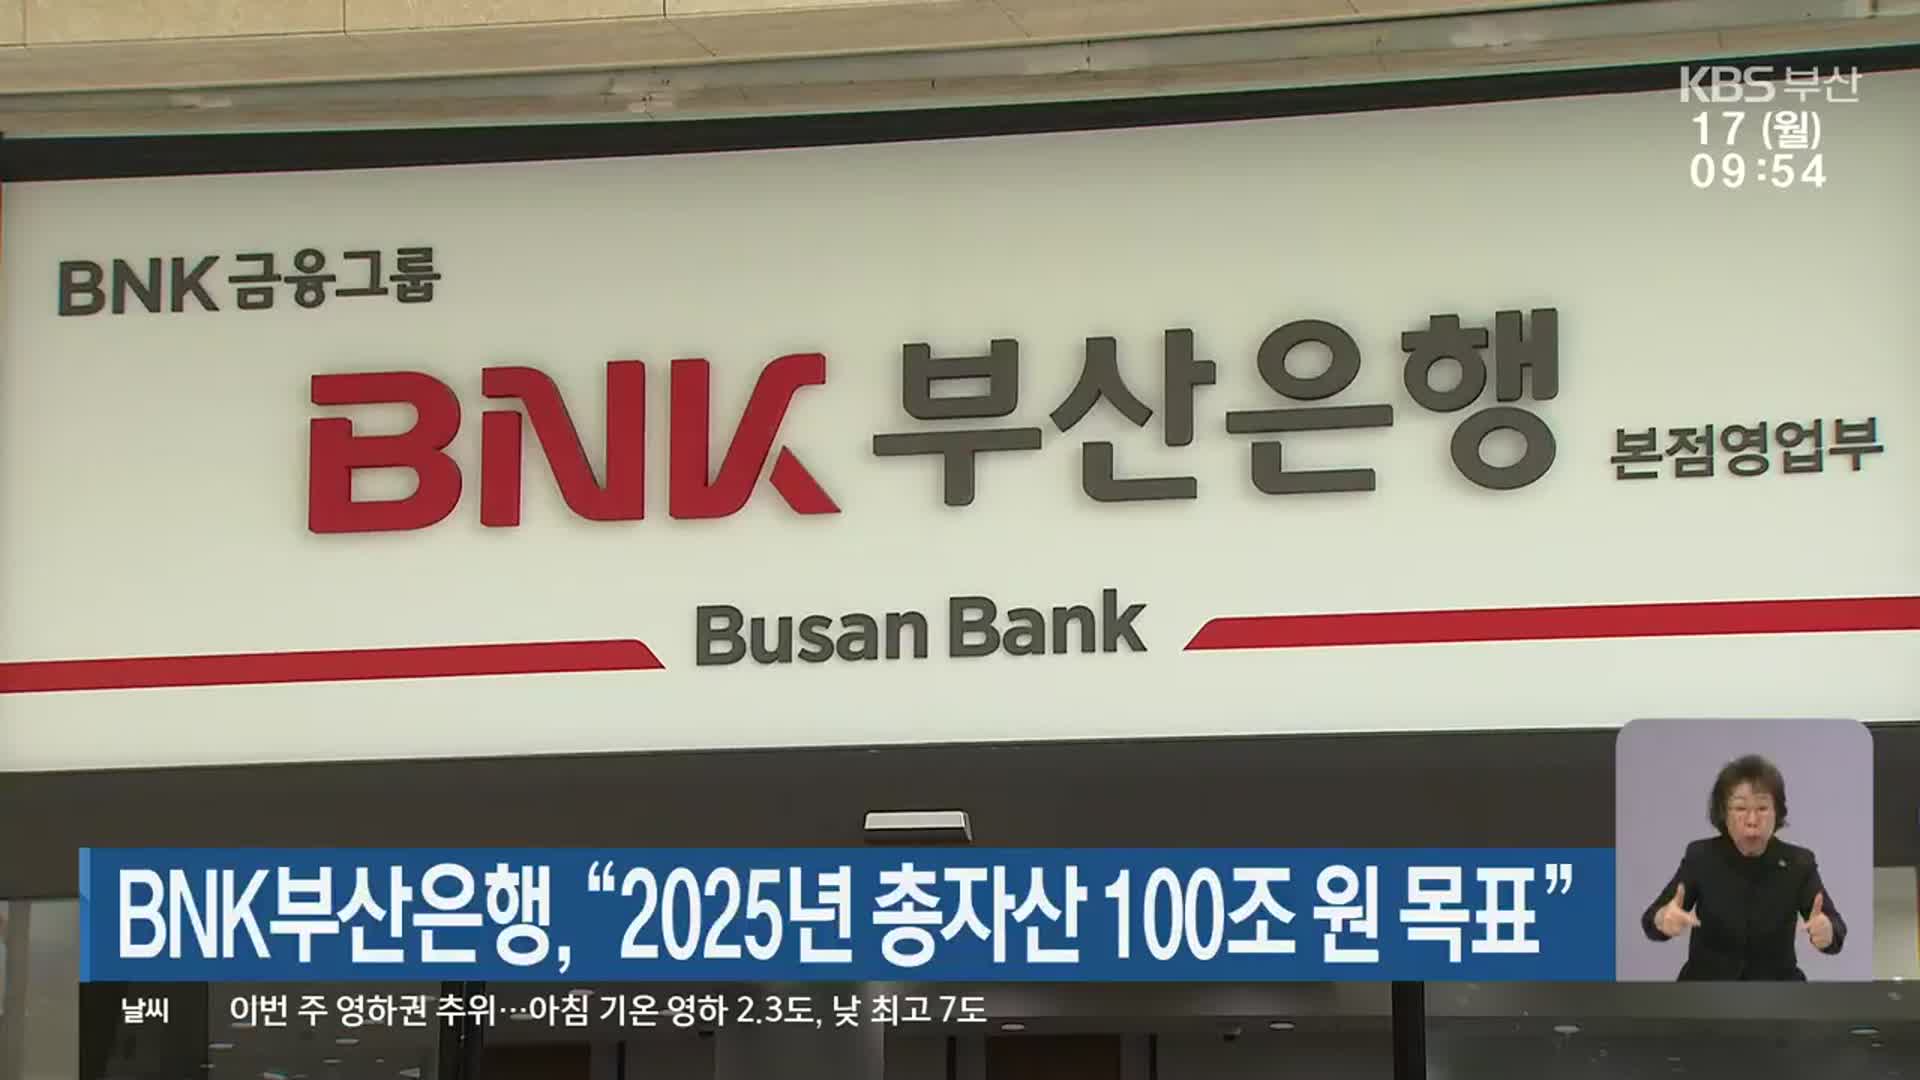 BNK부산은행, “2025년 총자산 100조 원 목표” 